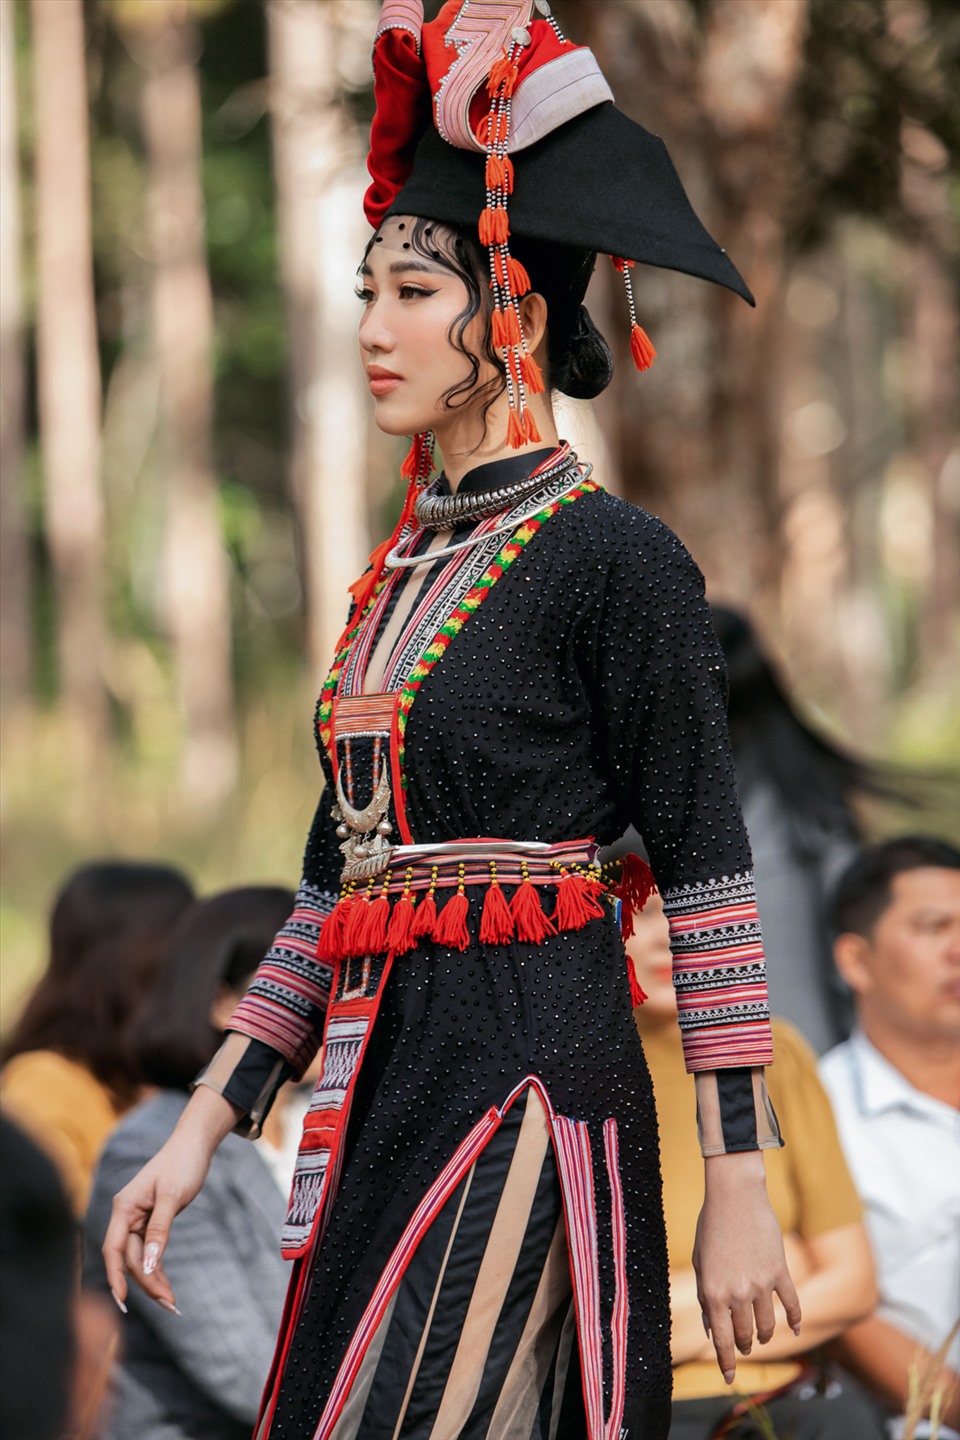 Cô bày tỏ niềm hào hứng khi được diện trang phục thổ cẩm của người dân đồng bào vùng cao. Đây là thiết kế được thực hiện theo cảm hứng tân cổ giao thoa. Ảnh: NVCC.